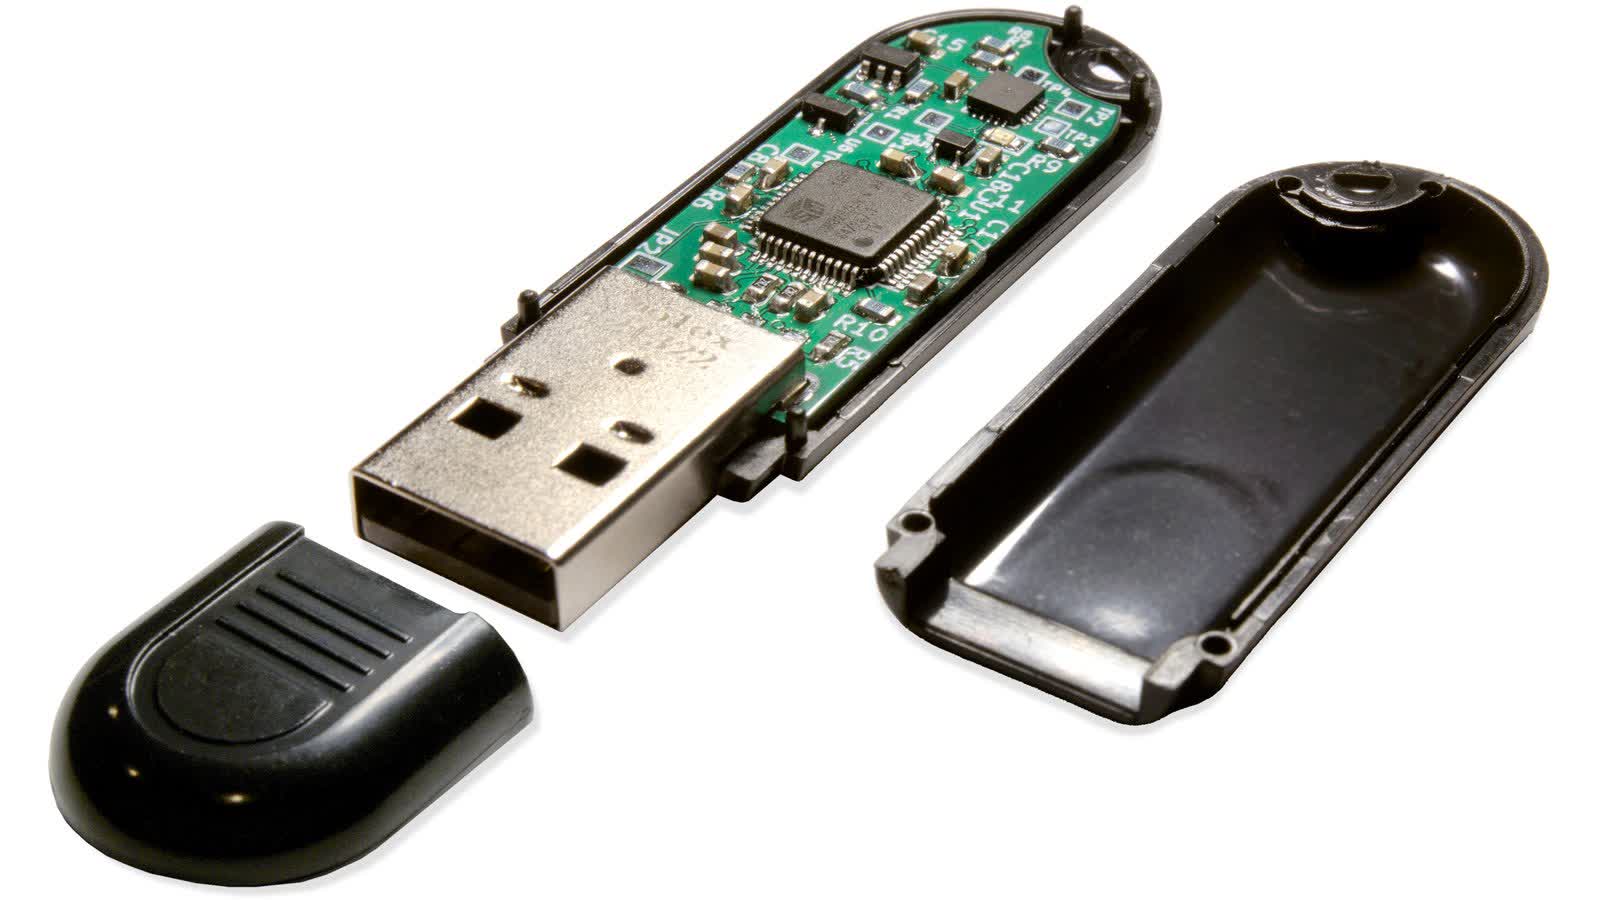 La memoria USB Ovrdrive con funciones de autodestrucción por sobrecalentamiento y ocultación de datos se acerca al objetivo de financiación colectiva